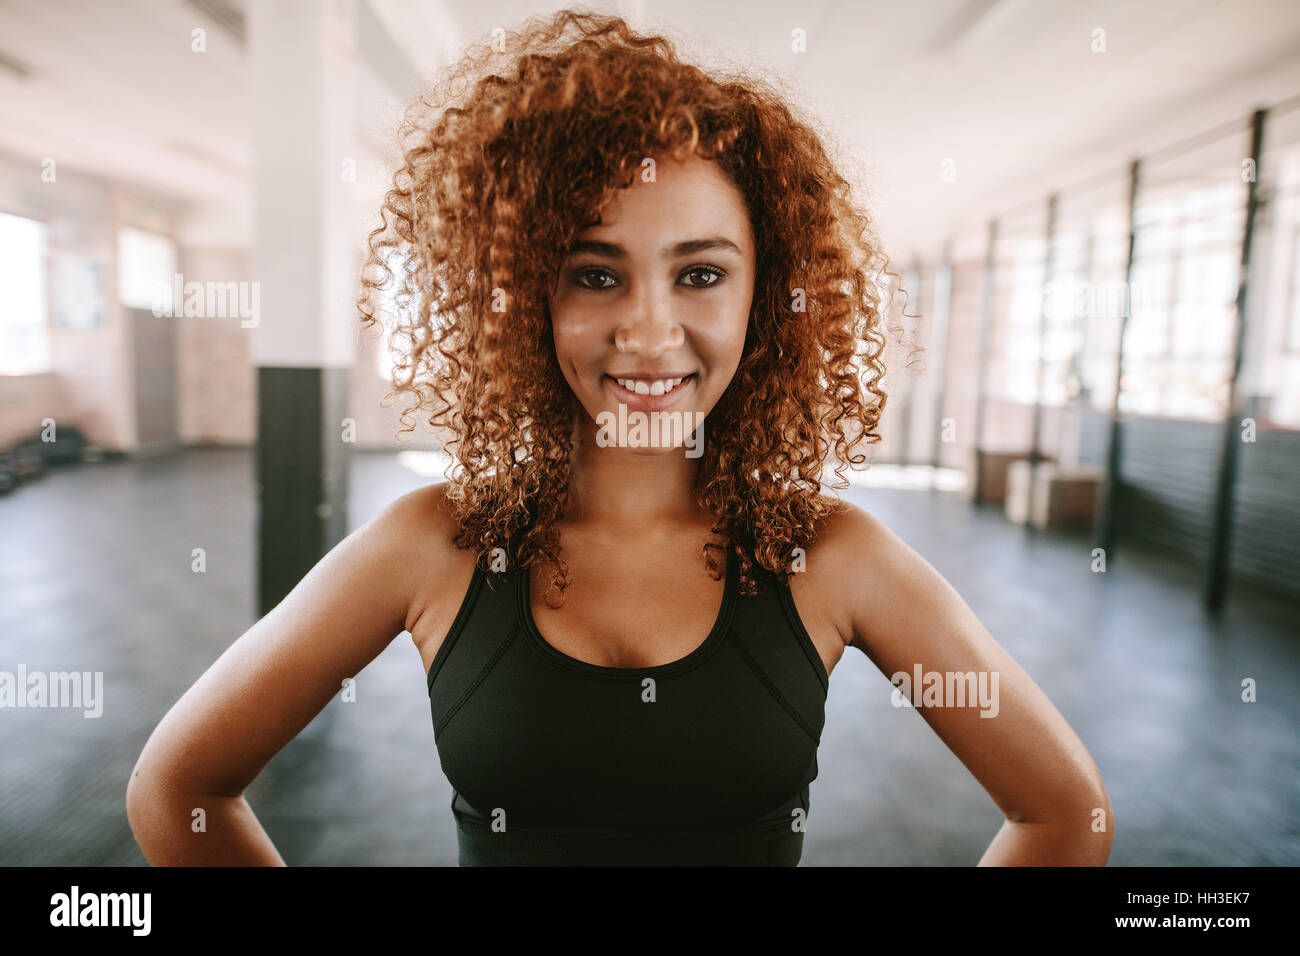 Portrait von junge afrikanische Frau mit lockigem Haar Lächeln im Health Club. Glücklich und schön Fitness-Frau im Fitnessstudio. Stockfoto